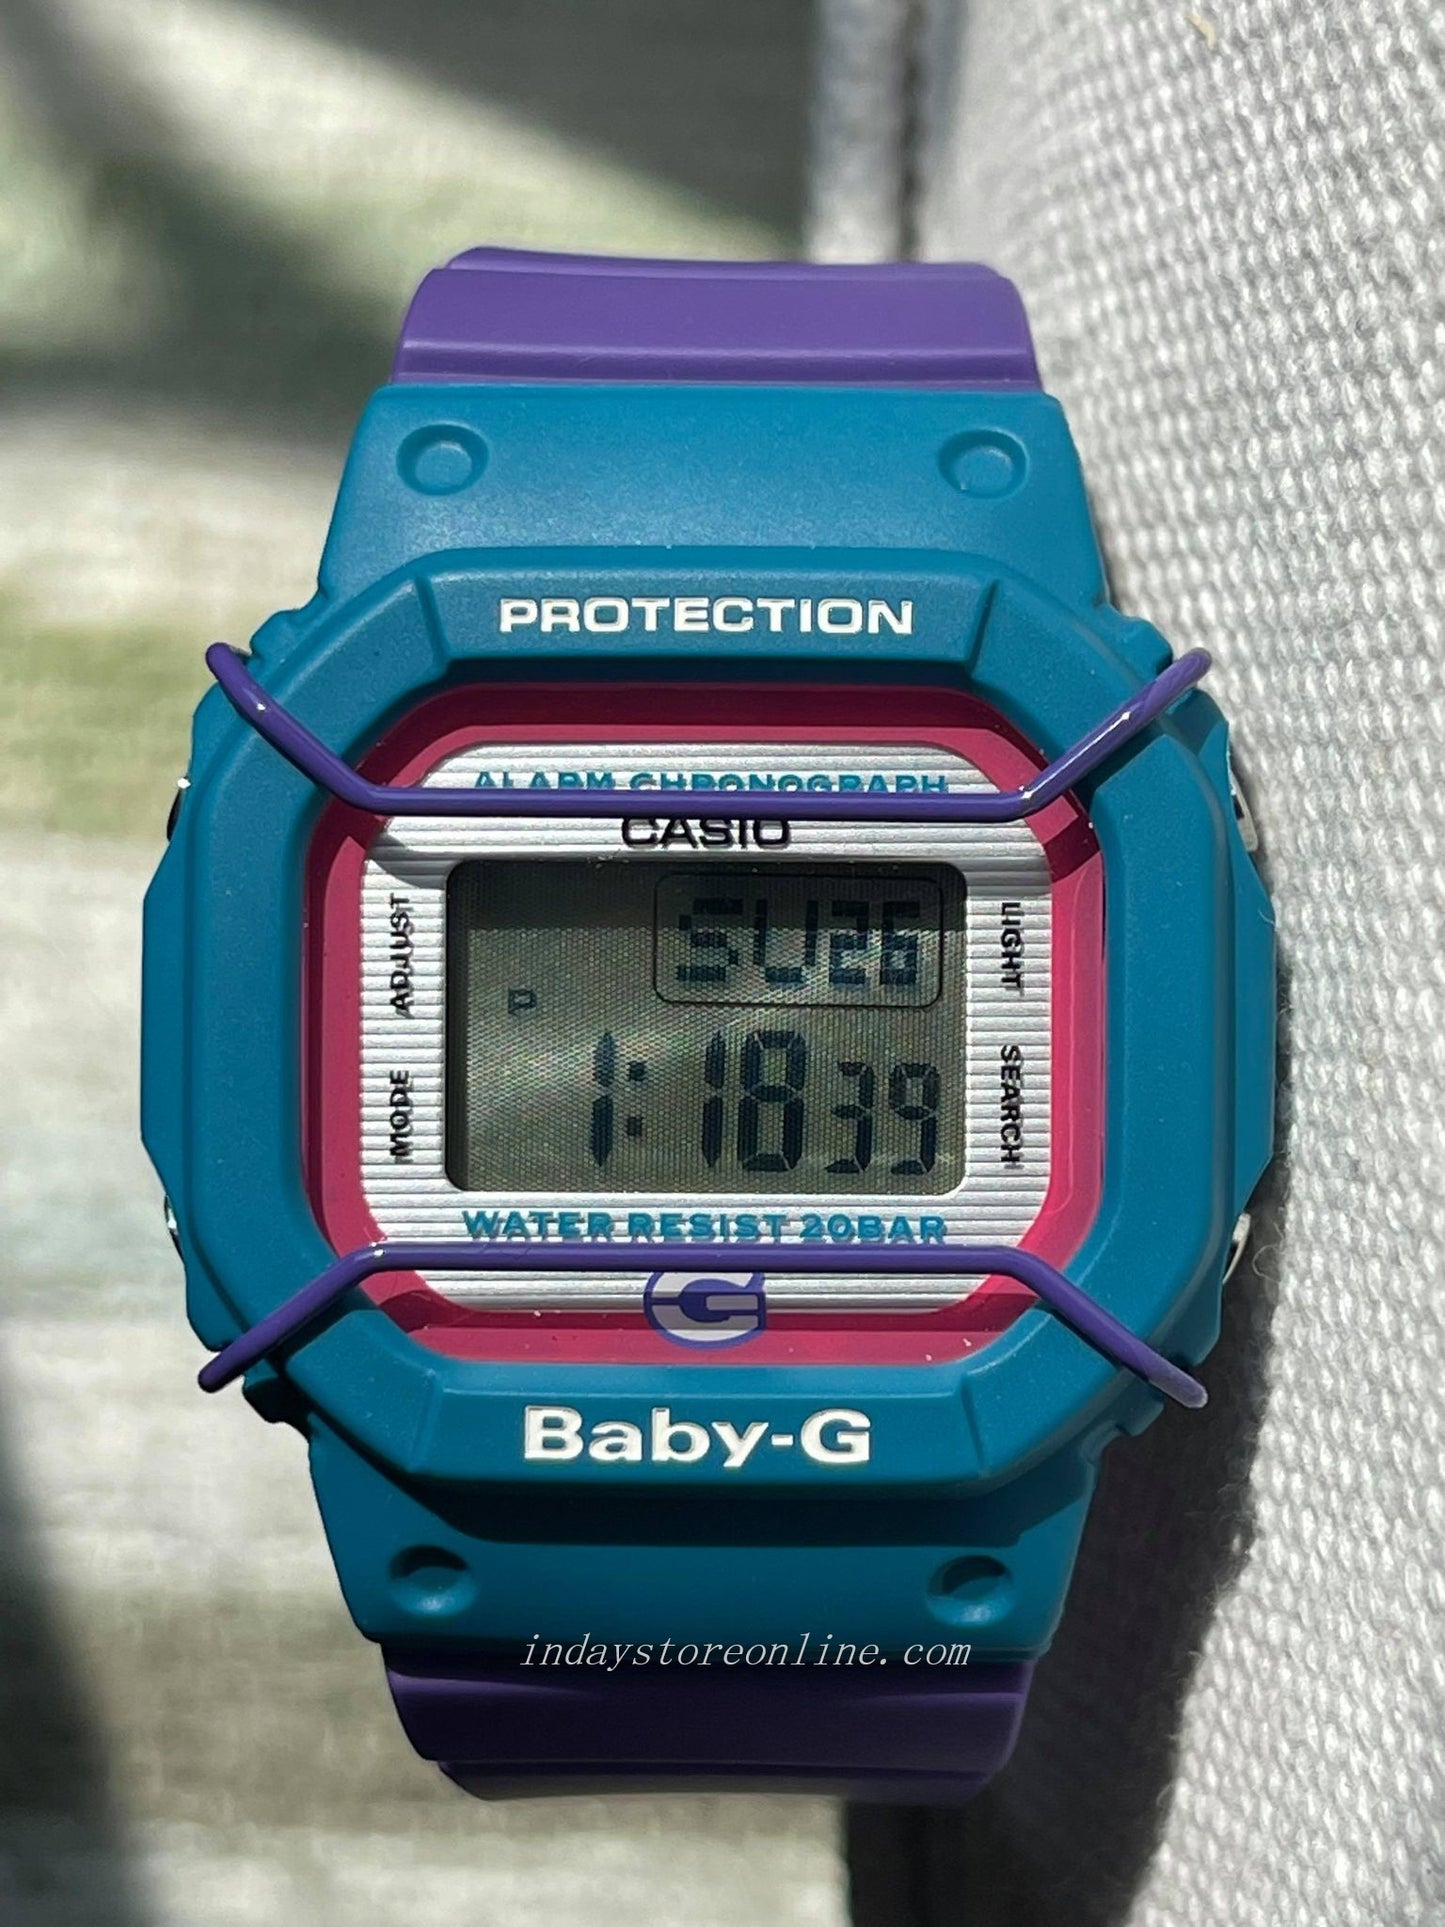 Casio Baby-G Women's Watch BGD-525F-6